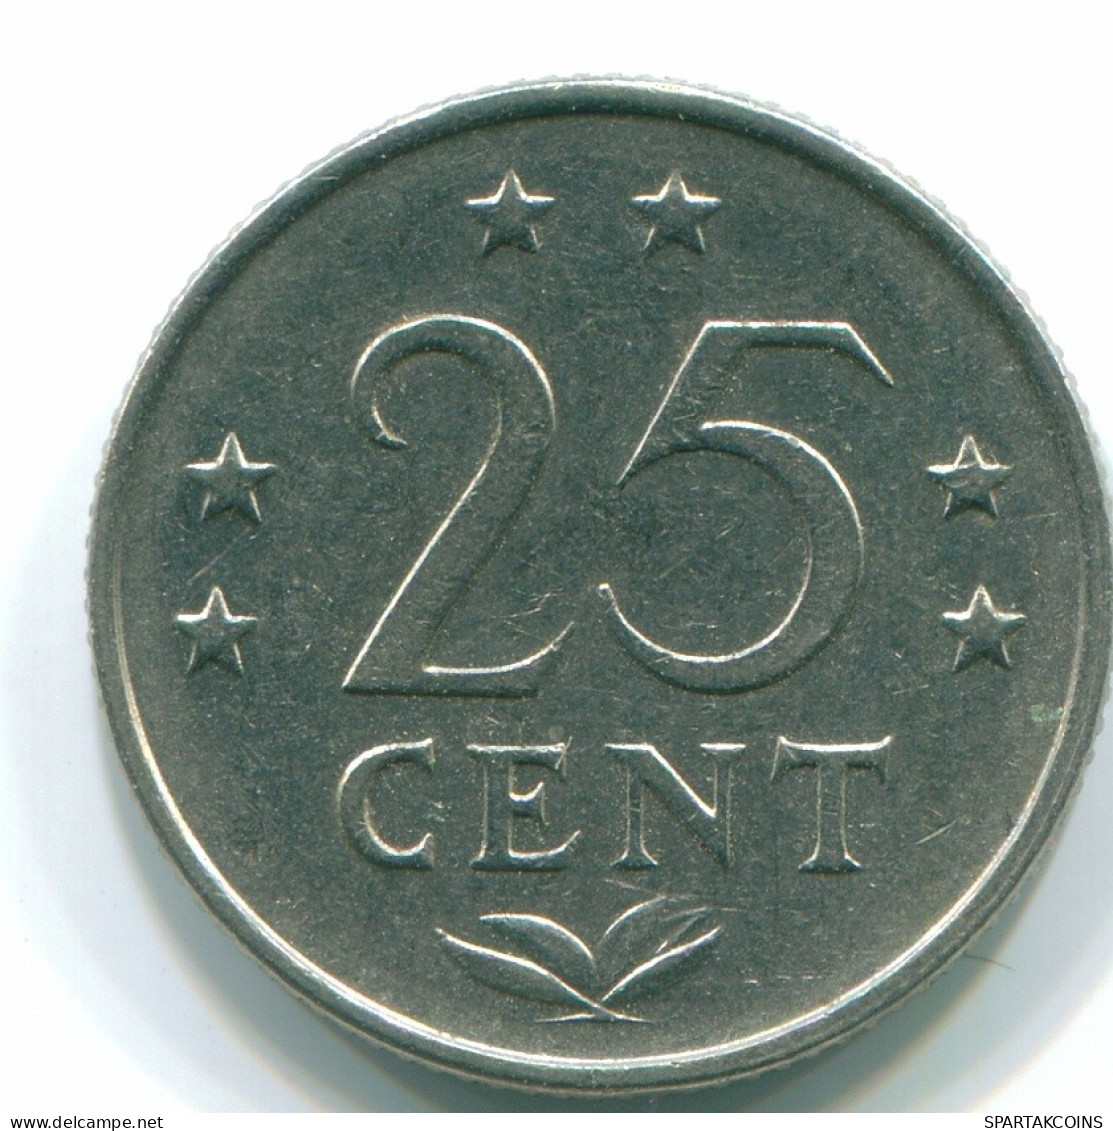 25 CENTS 1971 NIEDERLÄNDISCHE ANTILLEN Nickel Koloniale Münze #S11517.D.A - Niederländische Antillen